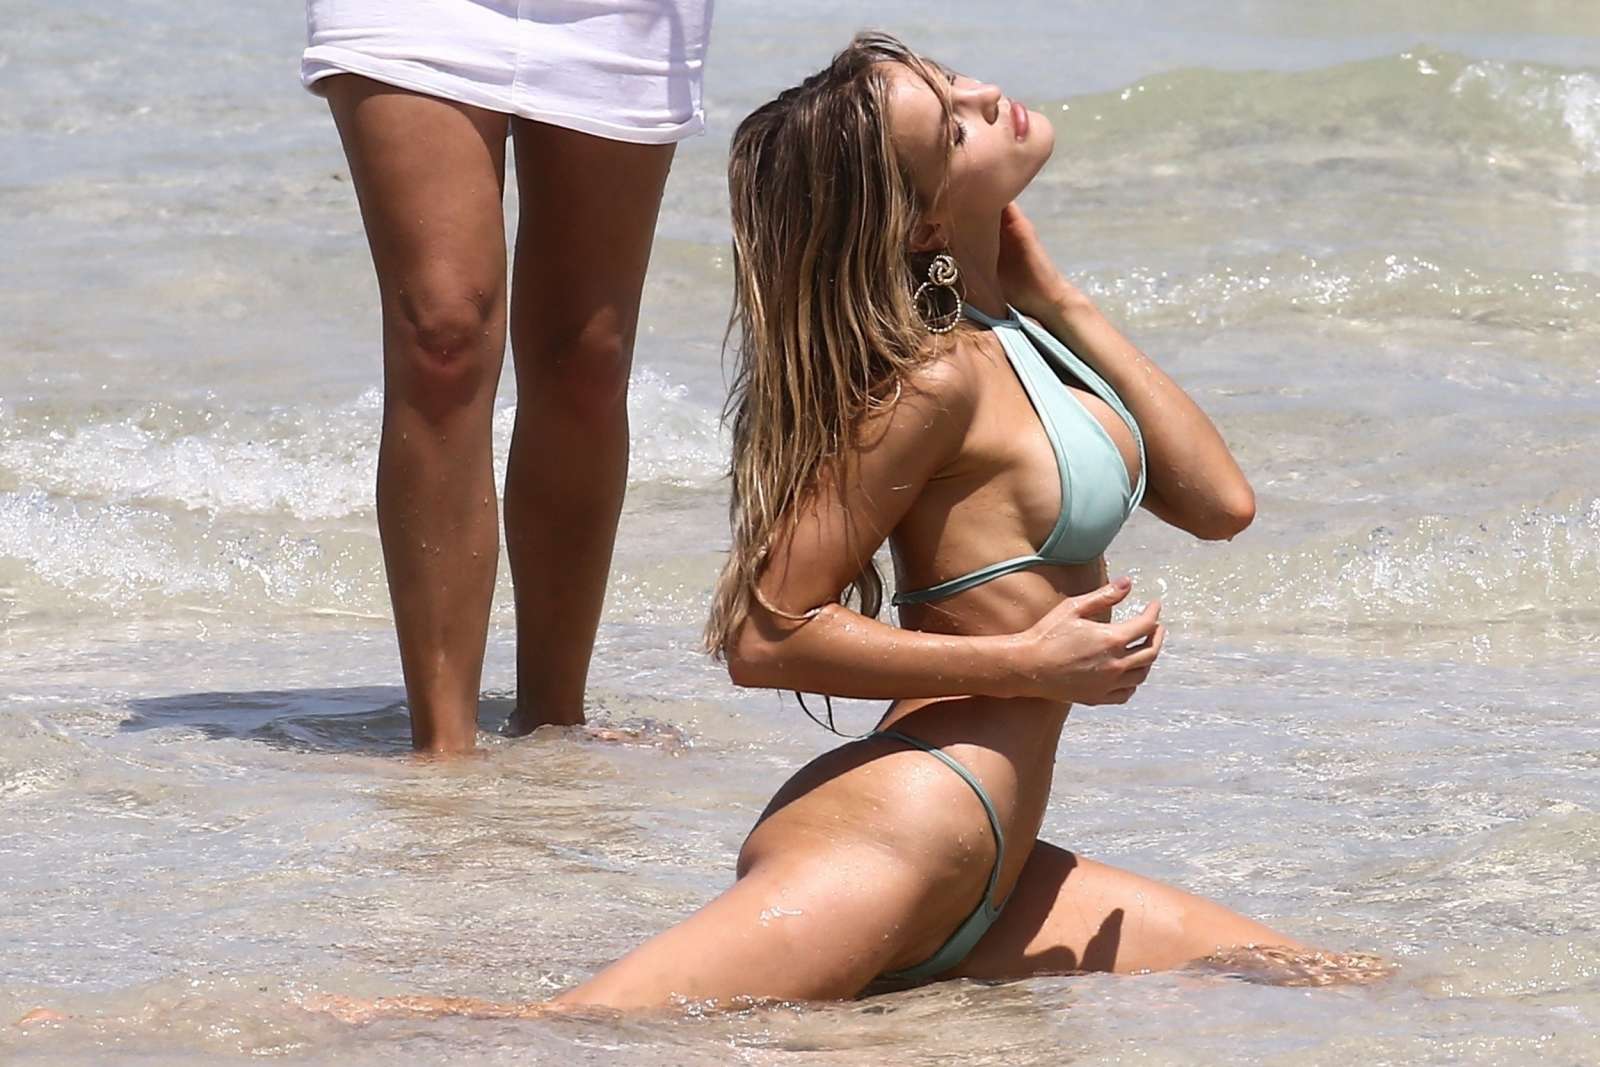 Joy Corrigan in Bikini â€“ Photoshoot on the beach in Miami